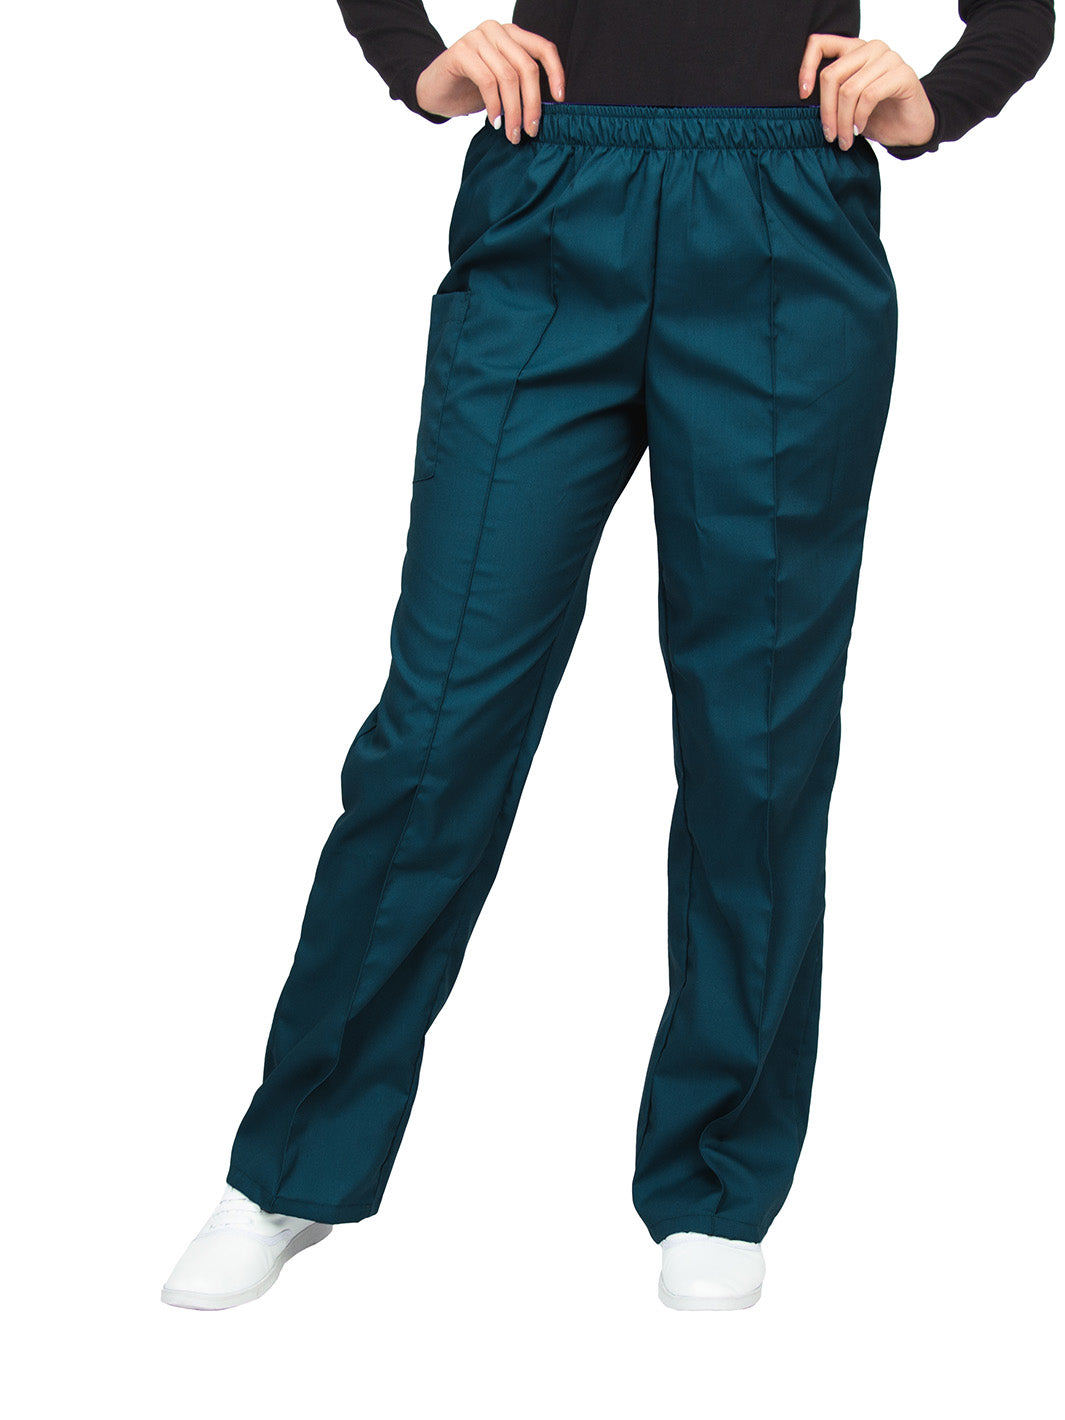 Pantalón quirúrgico azul caribe de corte recto, con una aforza al frente, una bolsa en el lado derecho con cierre de velcro, y cintura de elástico.